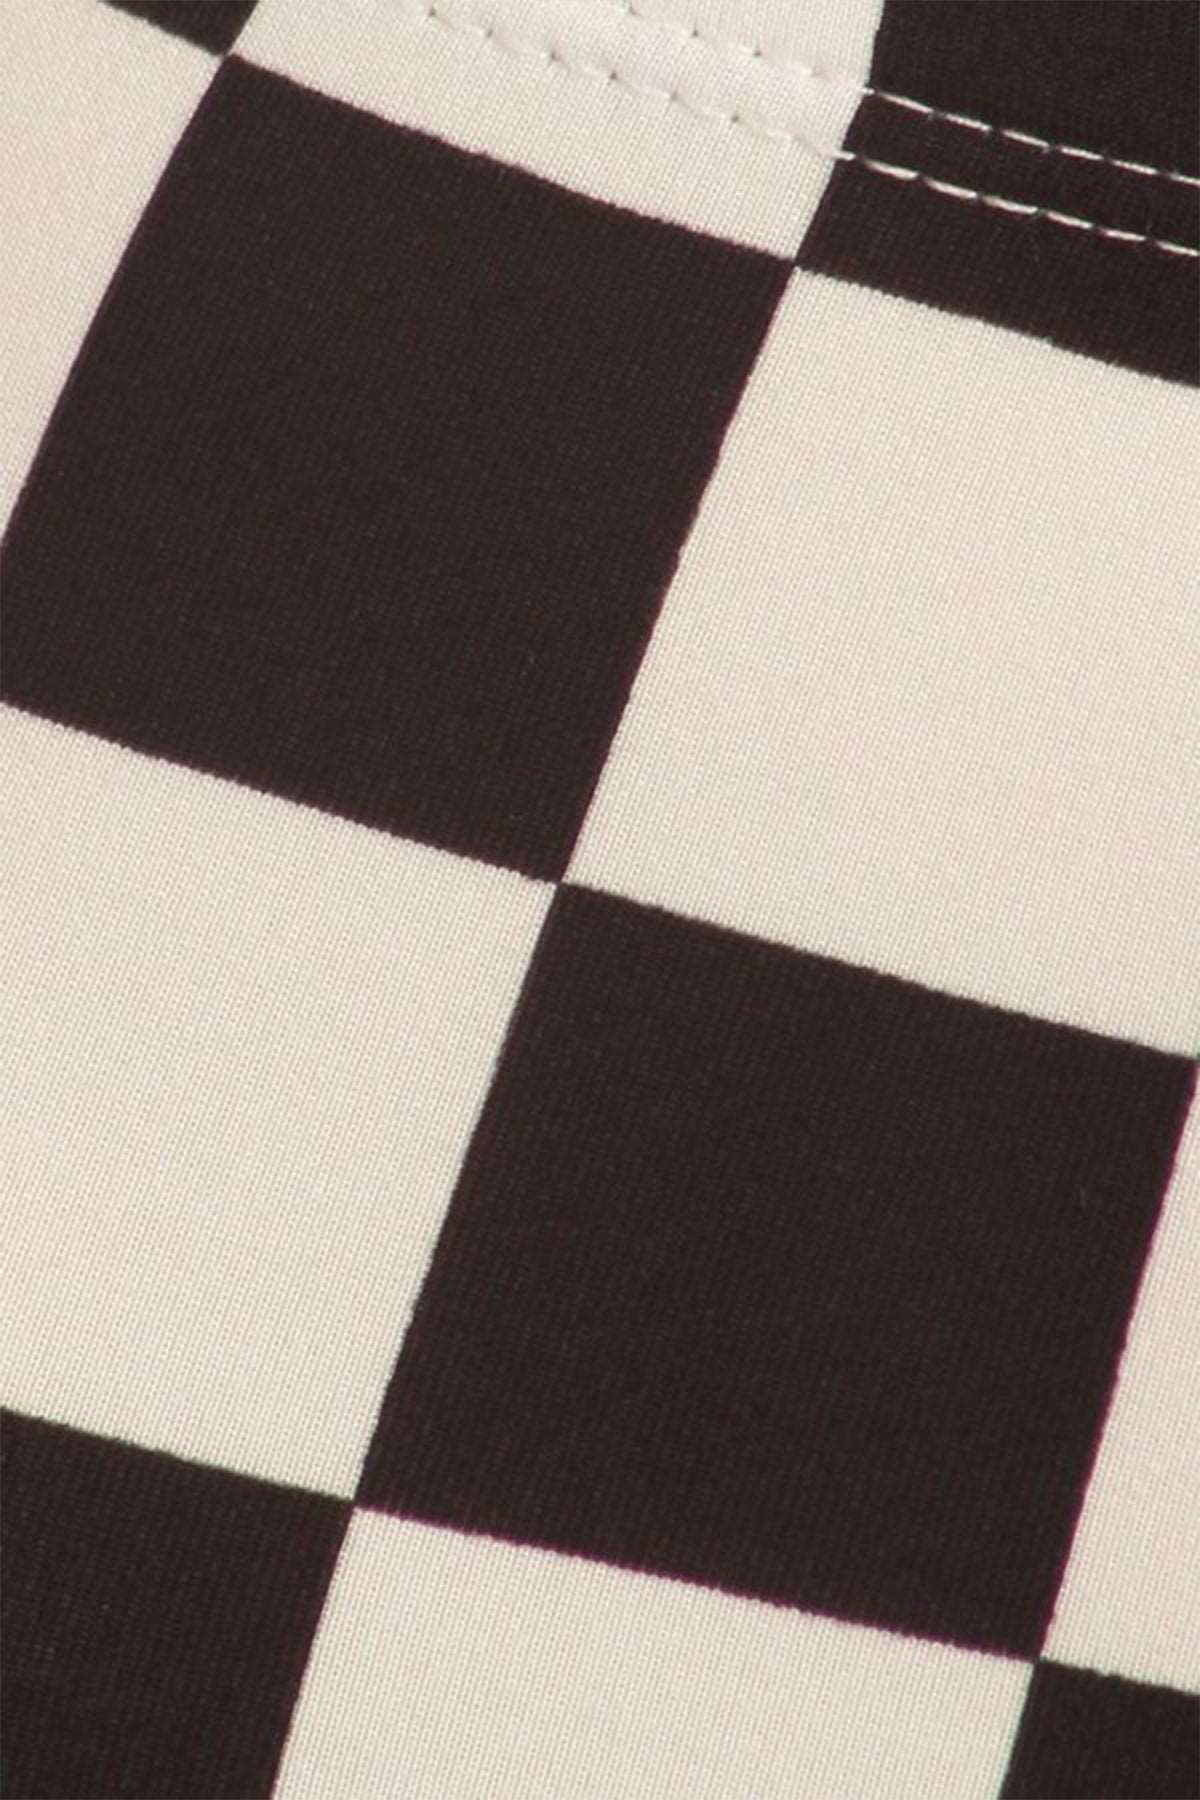 Checkered Black White